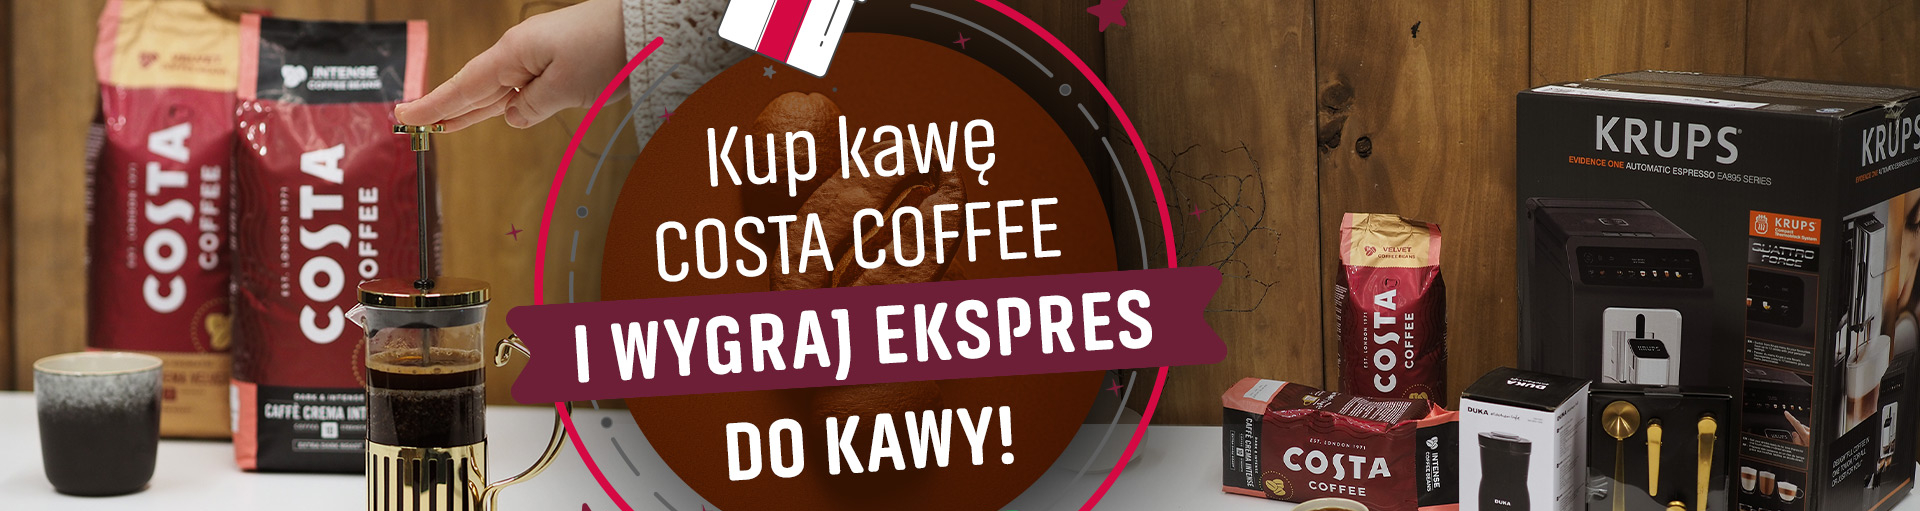 kup kawę Costa i wygraj ekspres do kawy